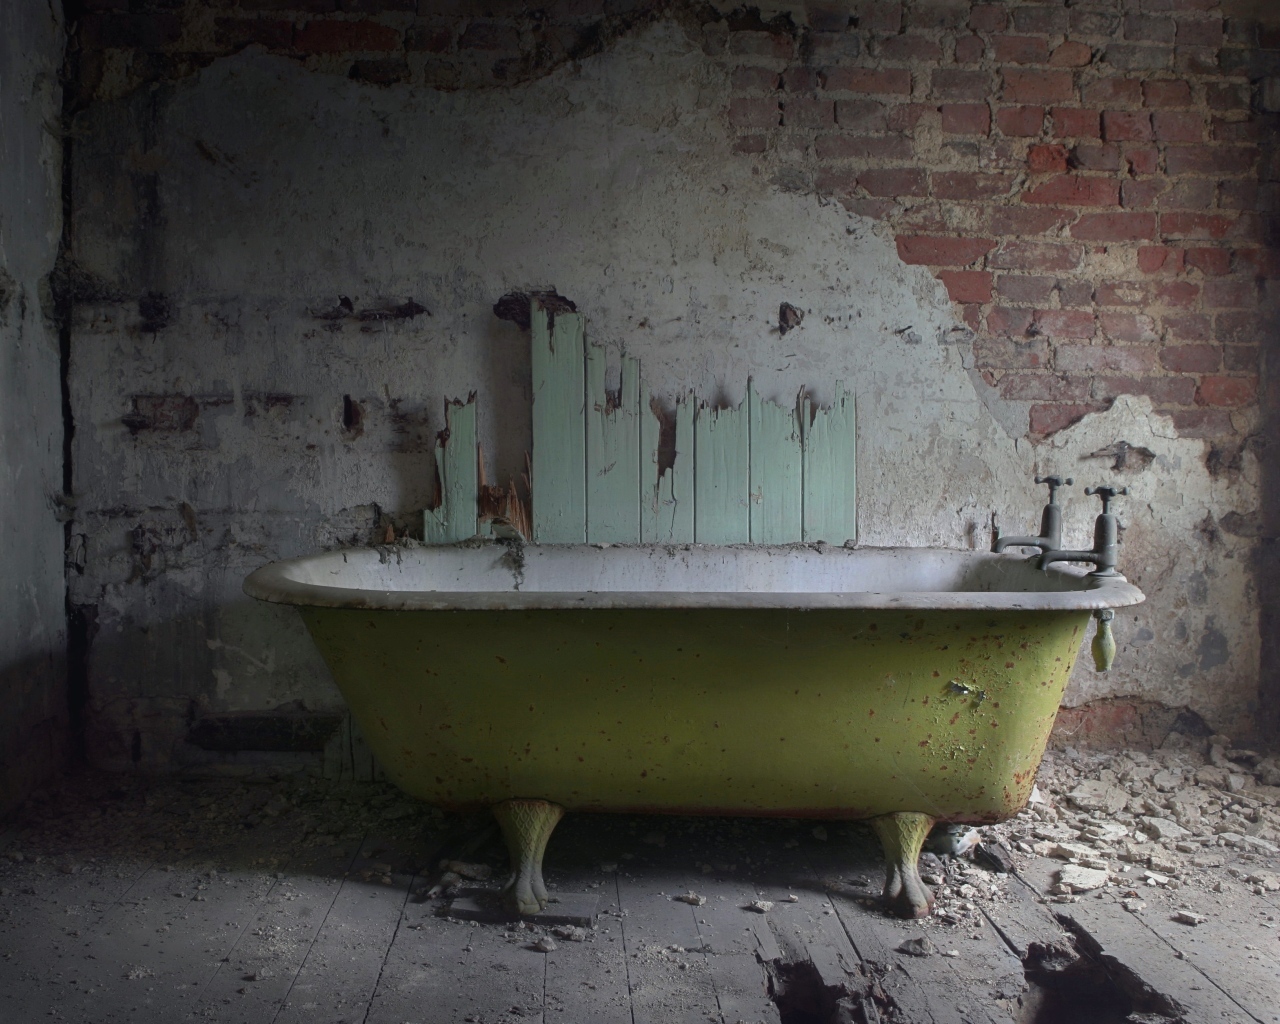 Ванная в разрушенной старой ванной комнате